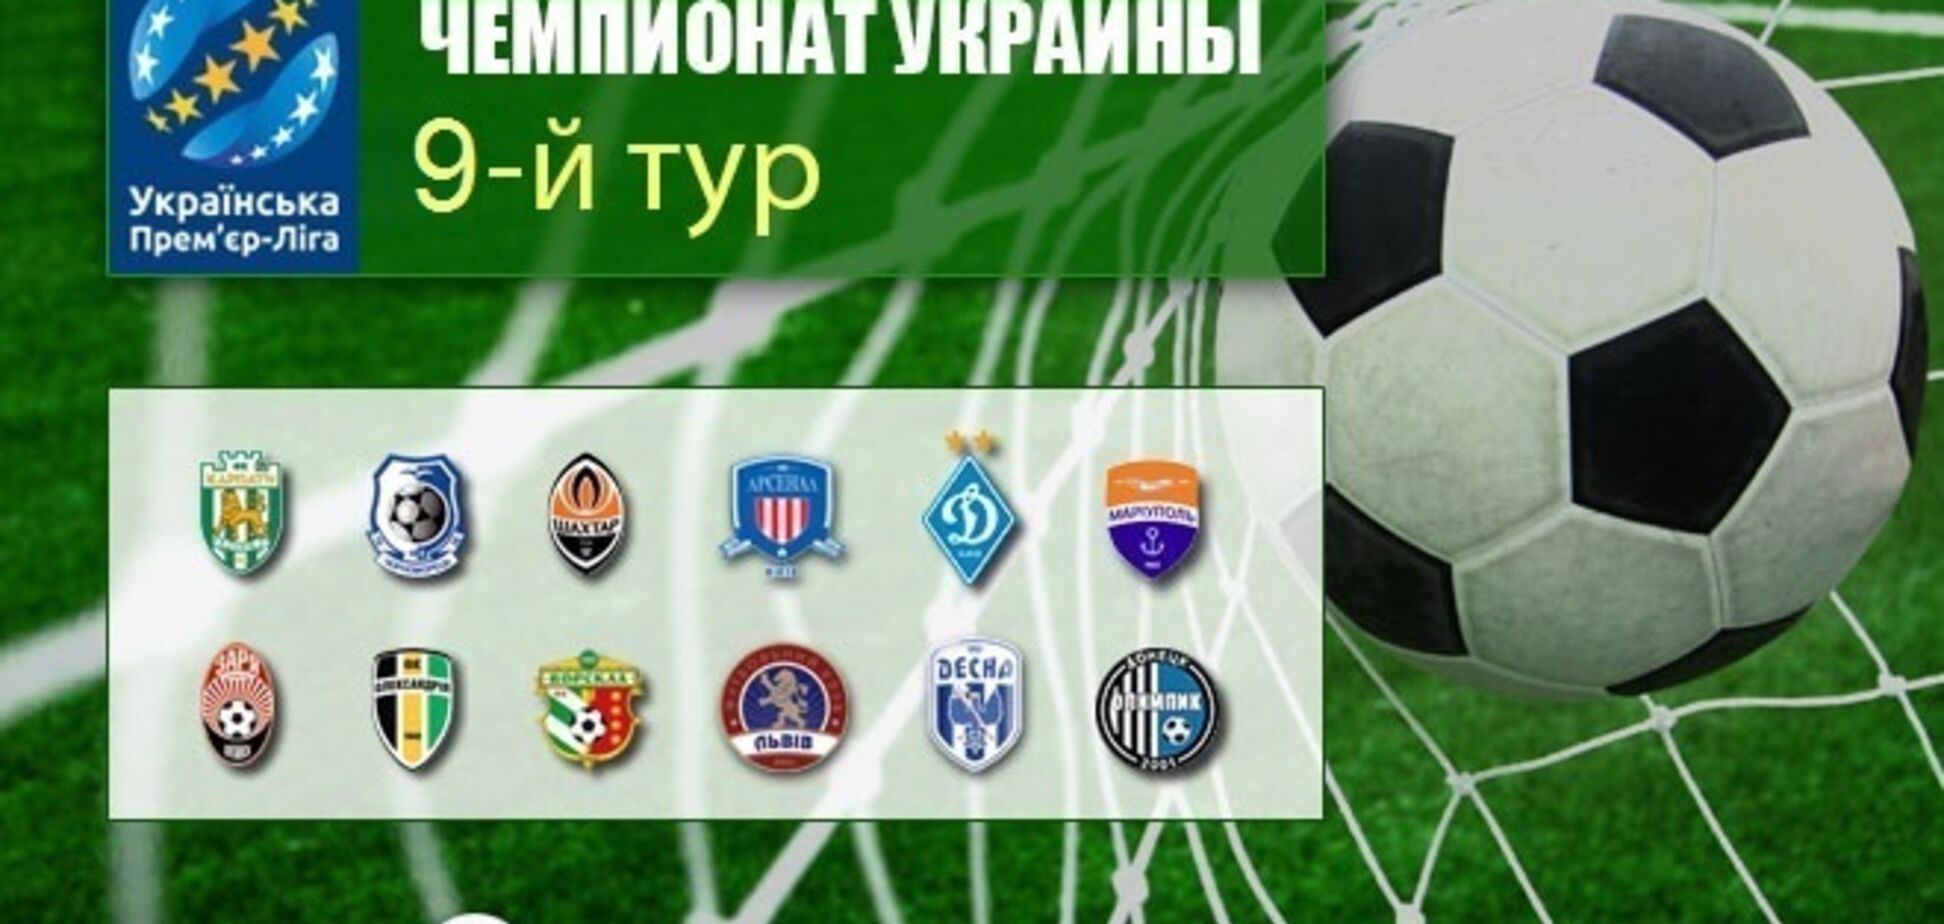 9-й тур чемпіонату України з футболу: результати та огляди